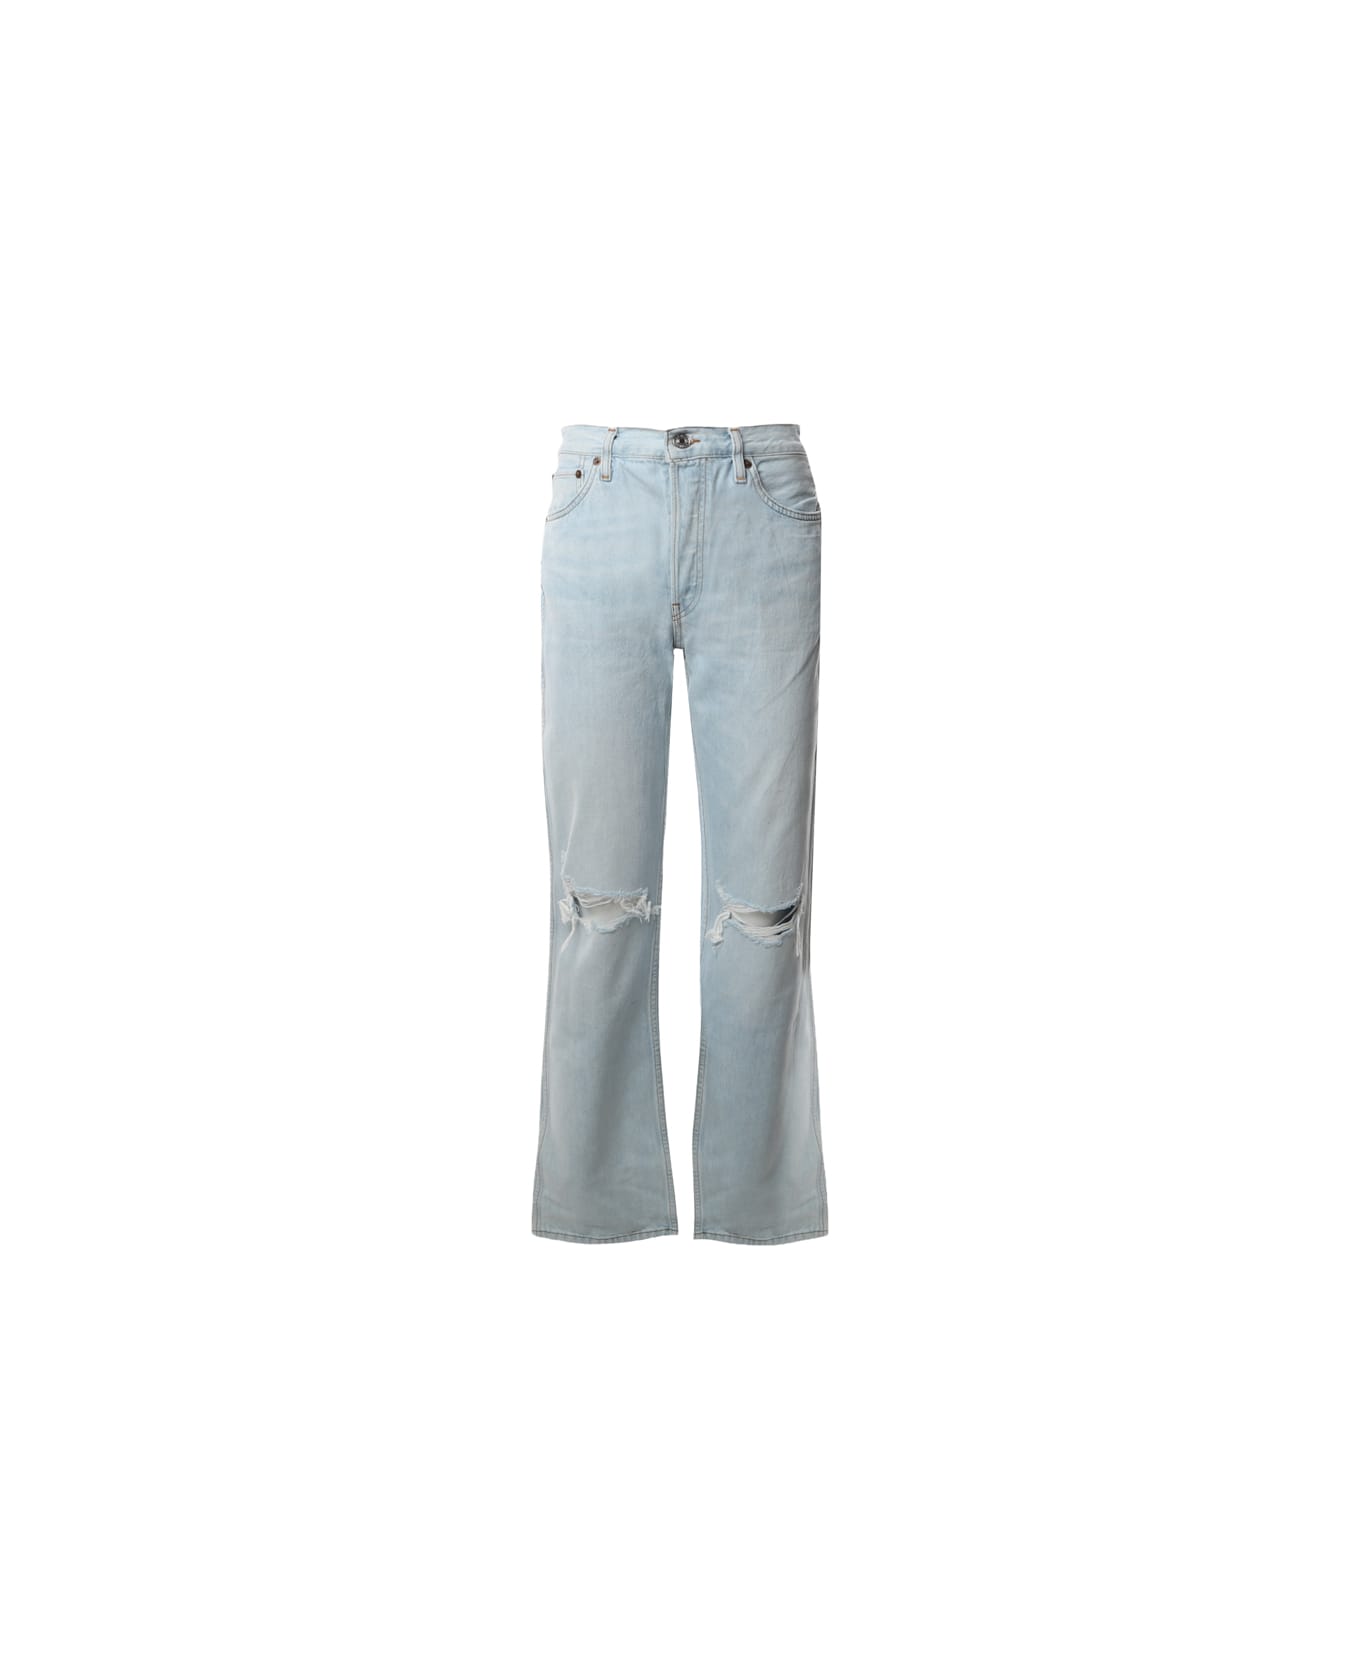 RE/DONE Regular Fit Jeans - Light blue